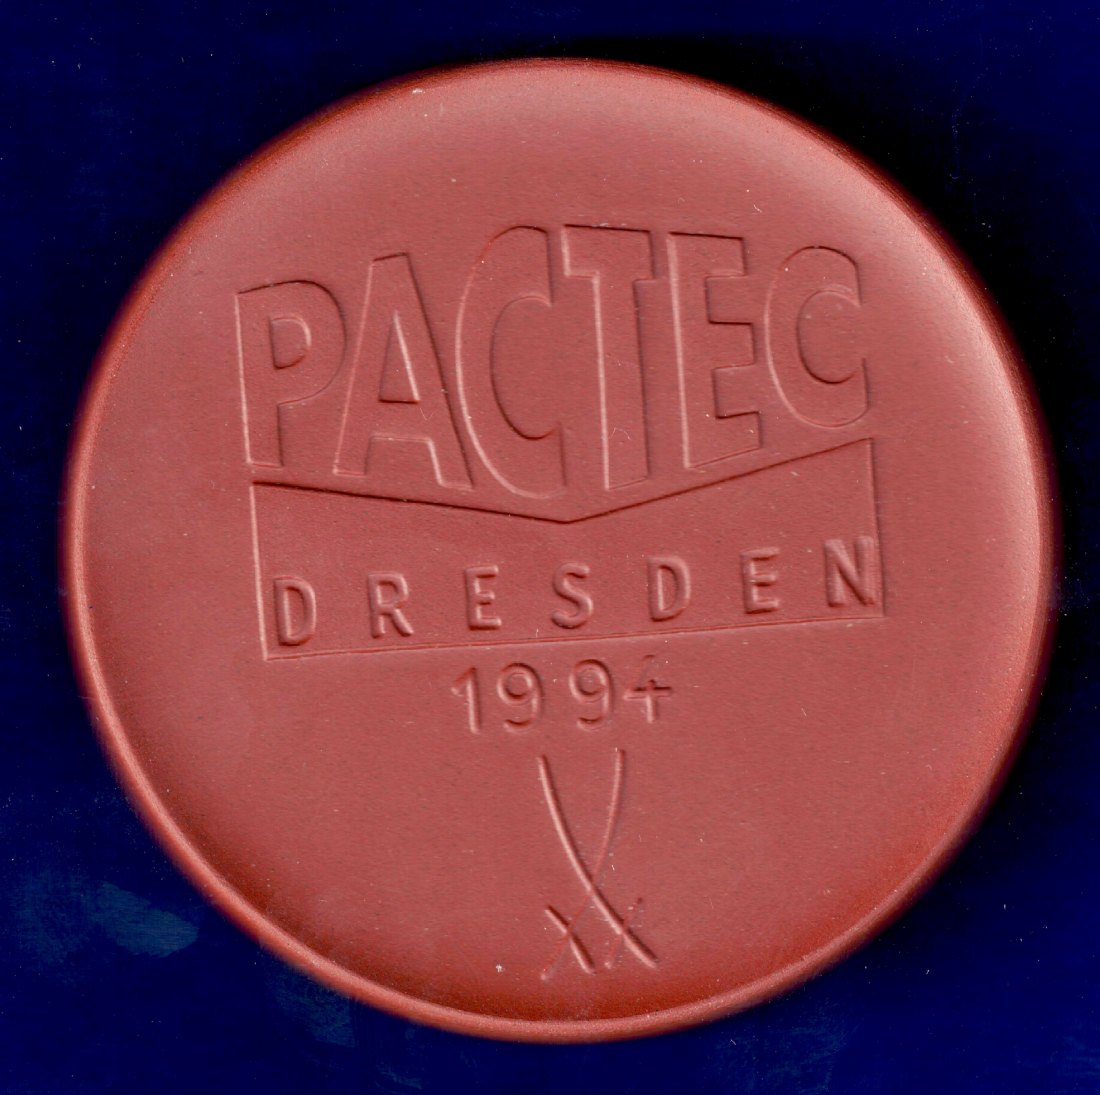  Dresden 1994 Porzellanmedaille Semperoper der Firma Pactec im Unternehmen Rose-Theegarten   